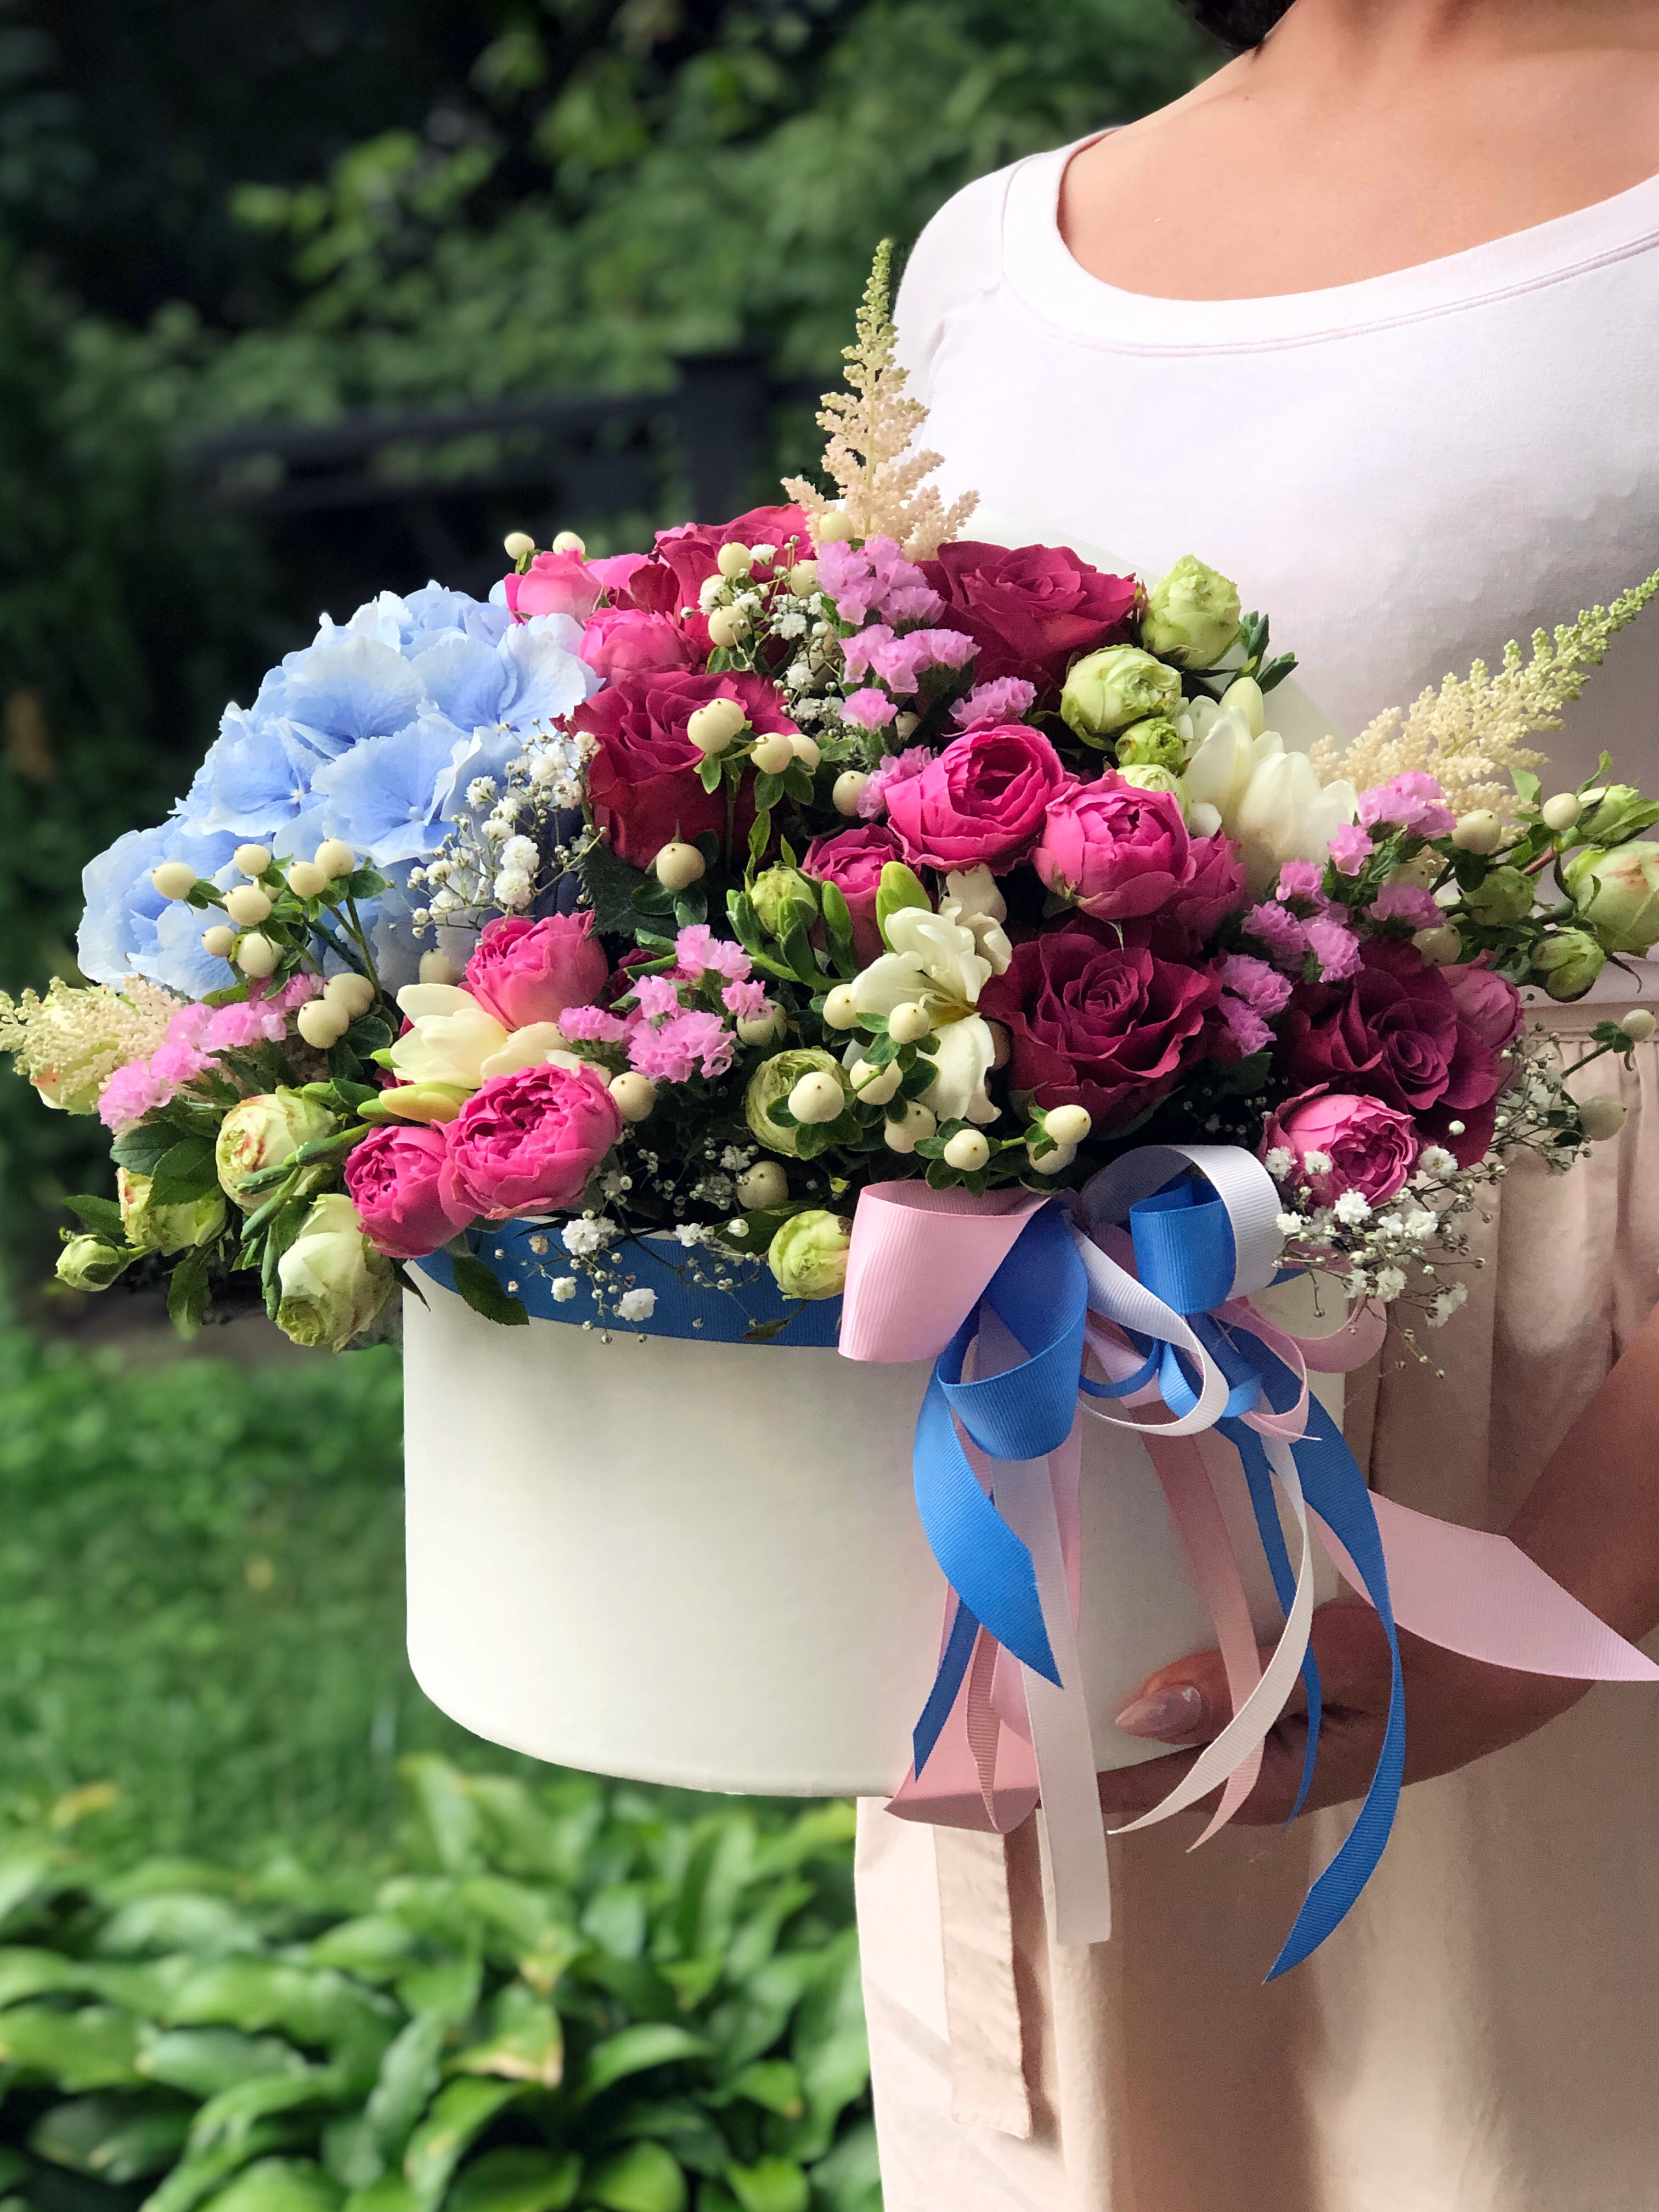 Доставка цветов в городе москва нате дом Букет тюльпанів безвозмездно, заказать букет цветов с доставкой